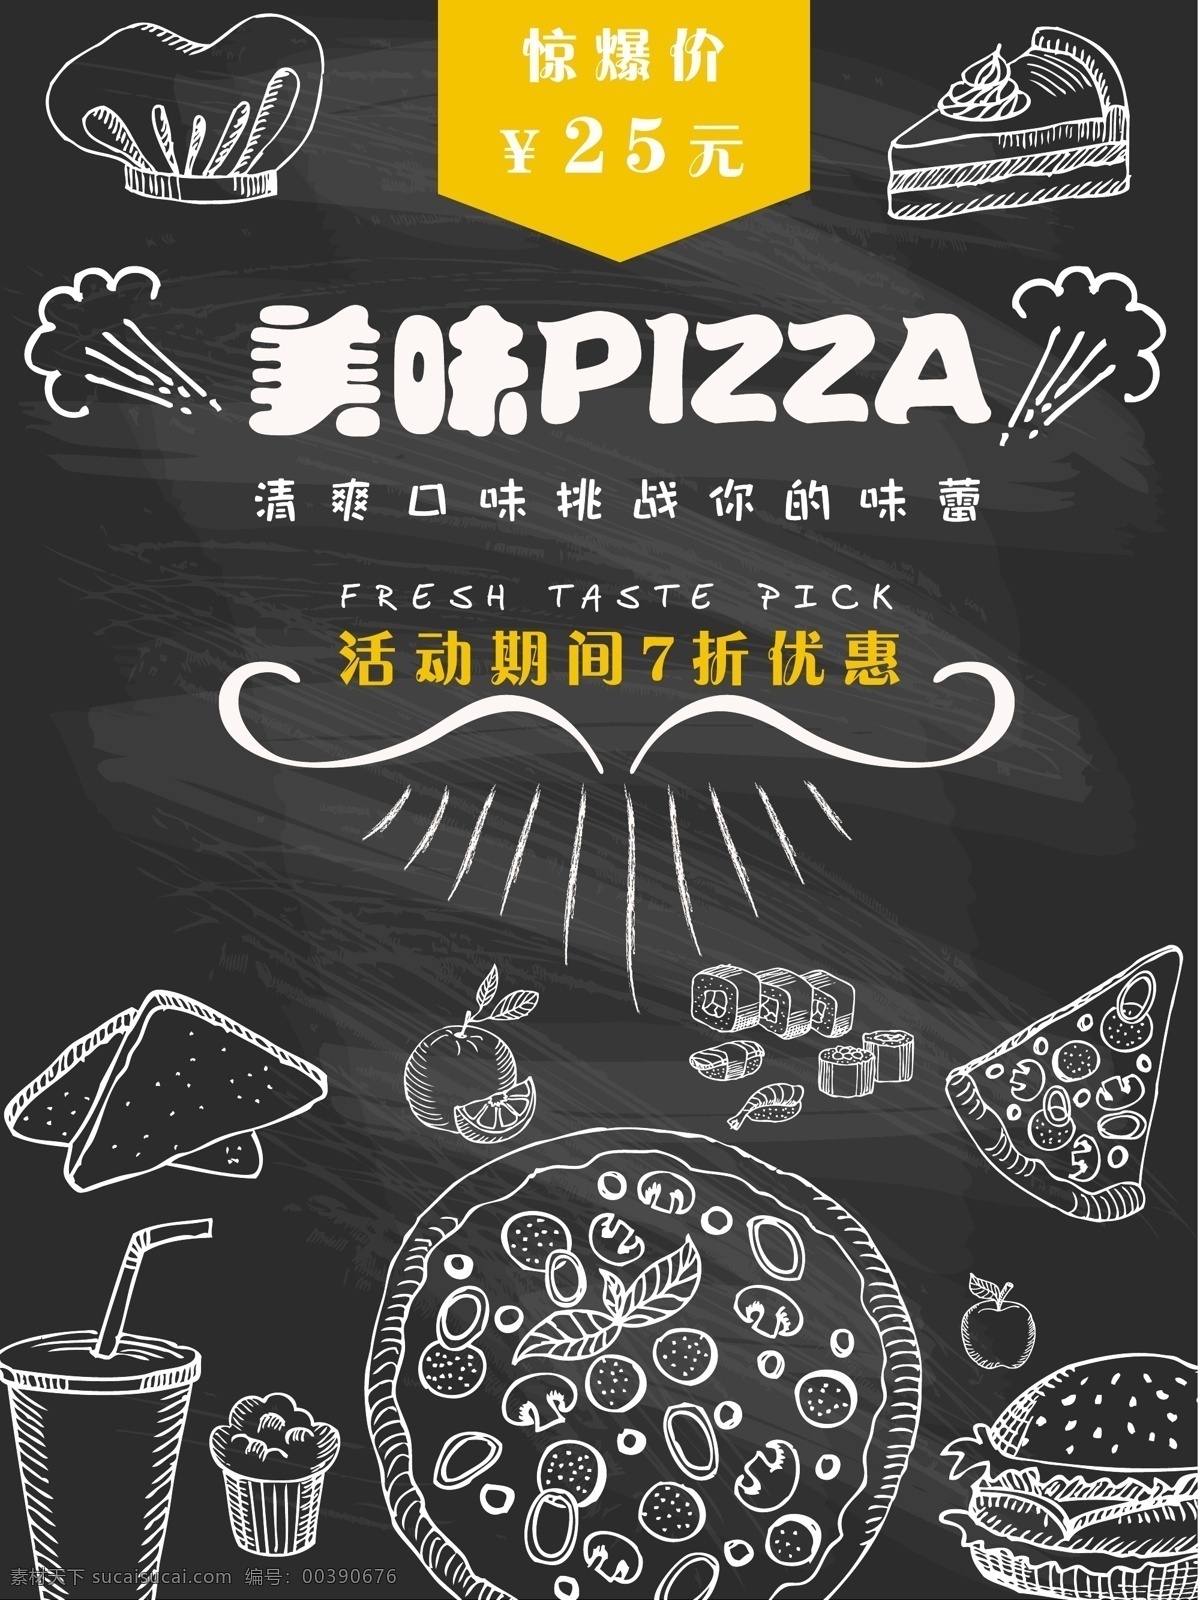 美味 passa 清爽 口味 挑战 味蕾 pizza 海报 美味披萨 清爽口味 打折优惠 美食 手绘